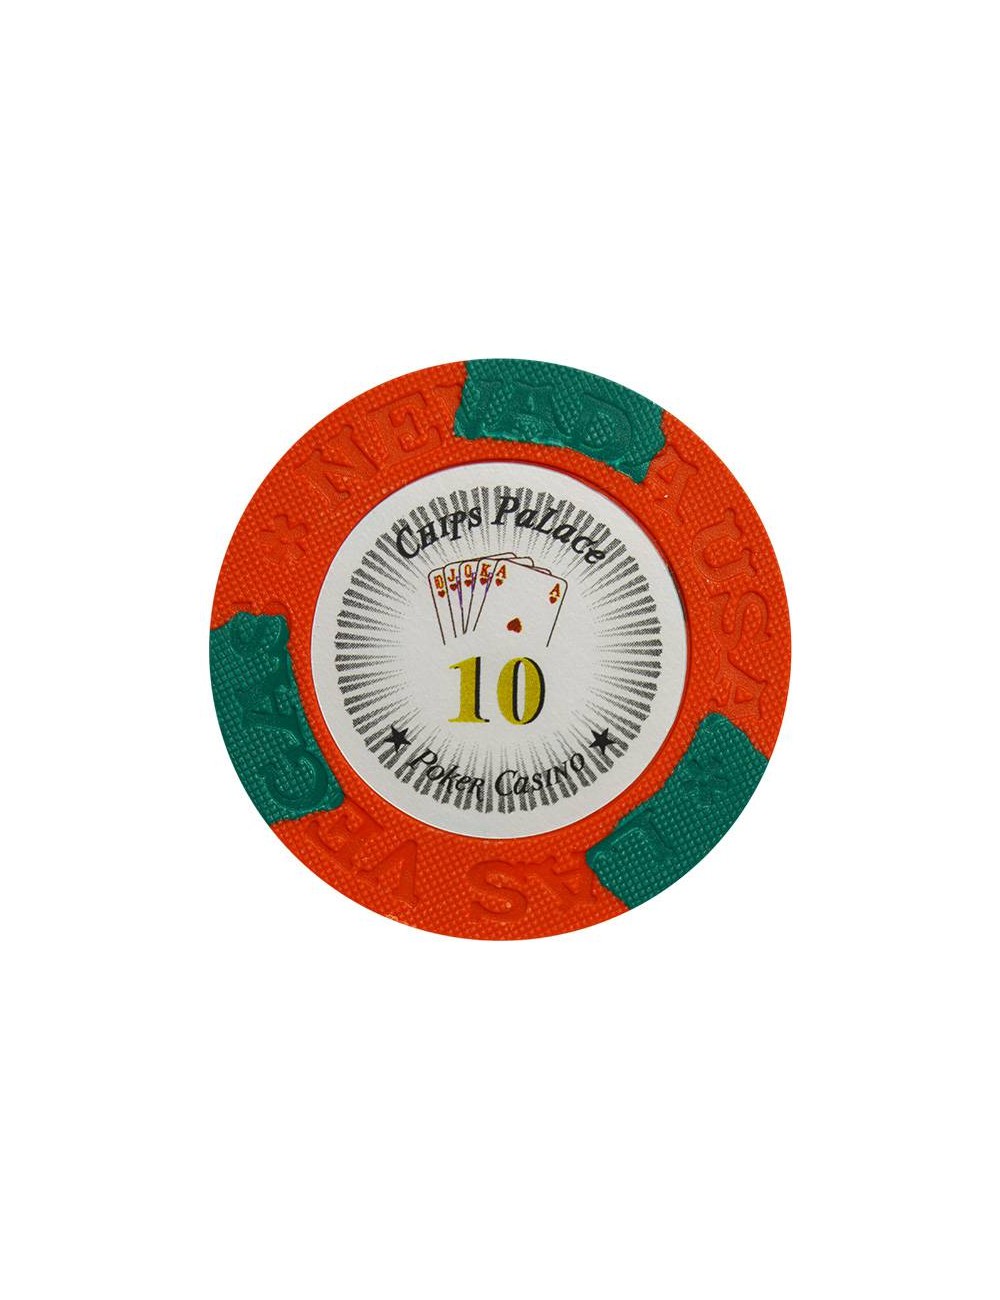 Ficha de póker "LAS VEGAS 10" - de arcilla compuesta con inserto de metal - 14g - en venta individualmente